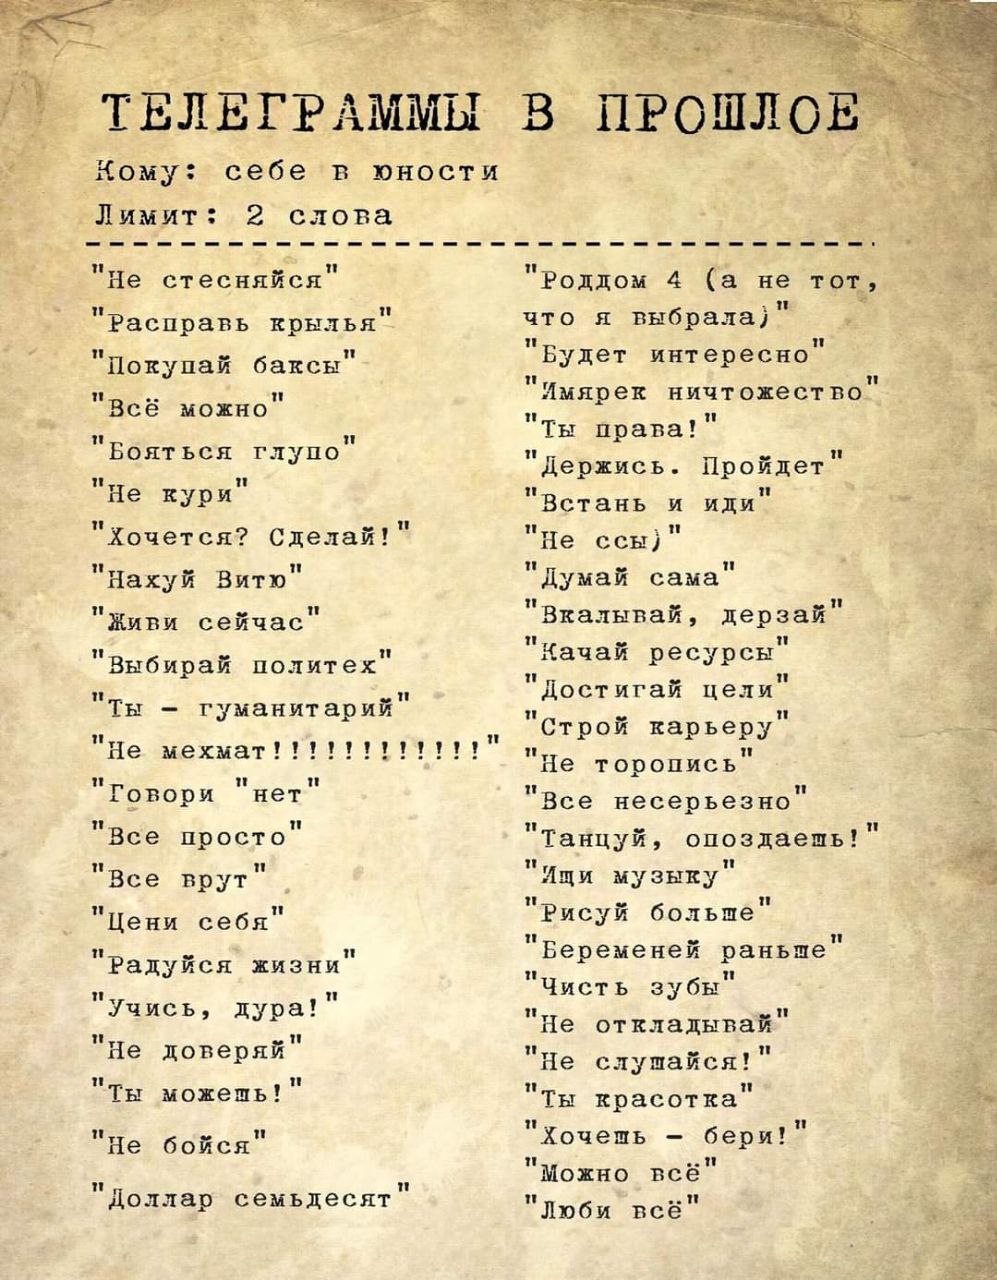 Телеграмма как пишется на русском языке фото 104